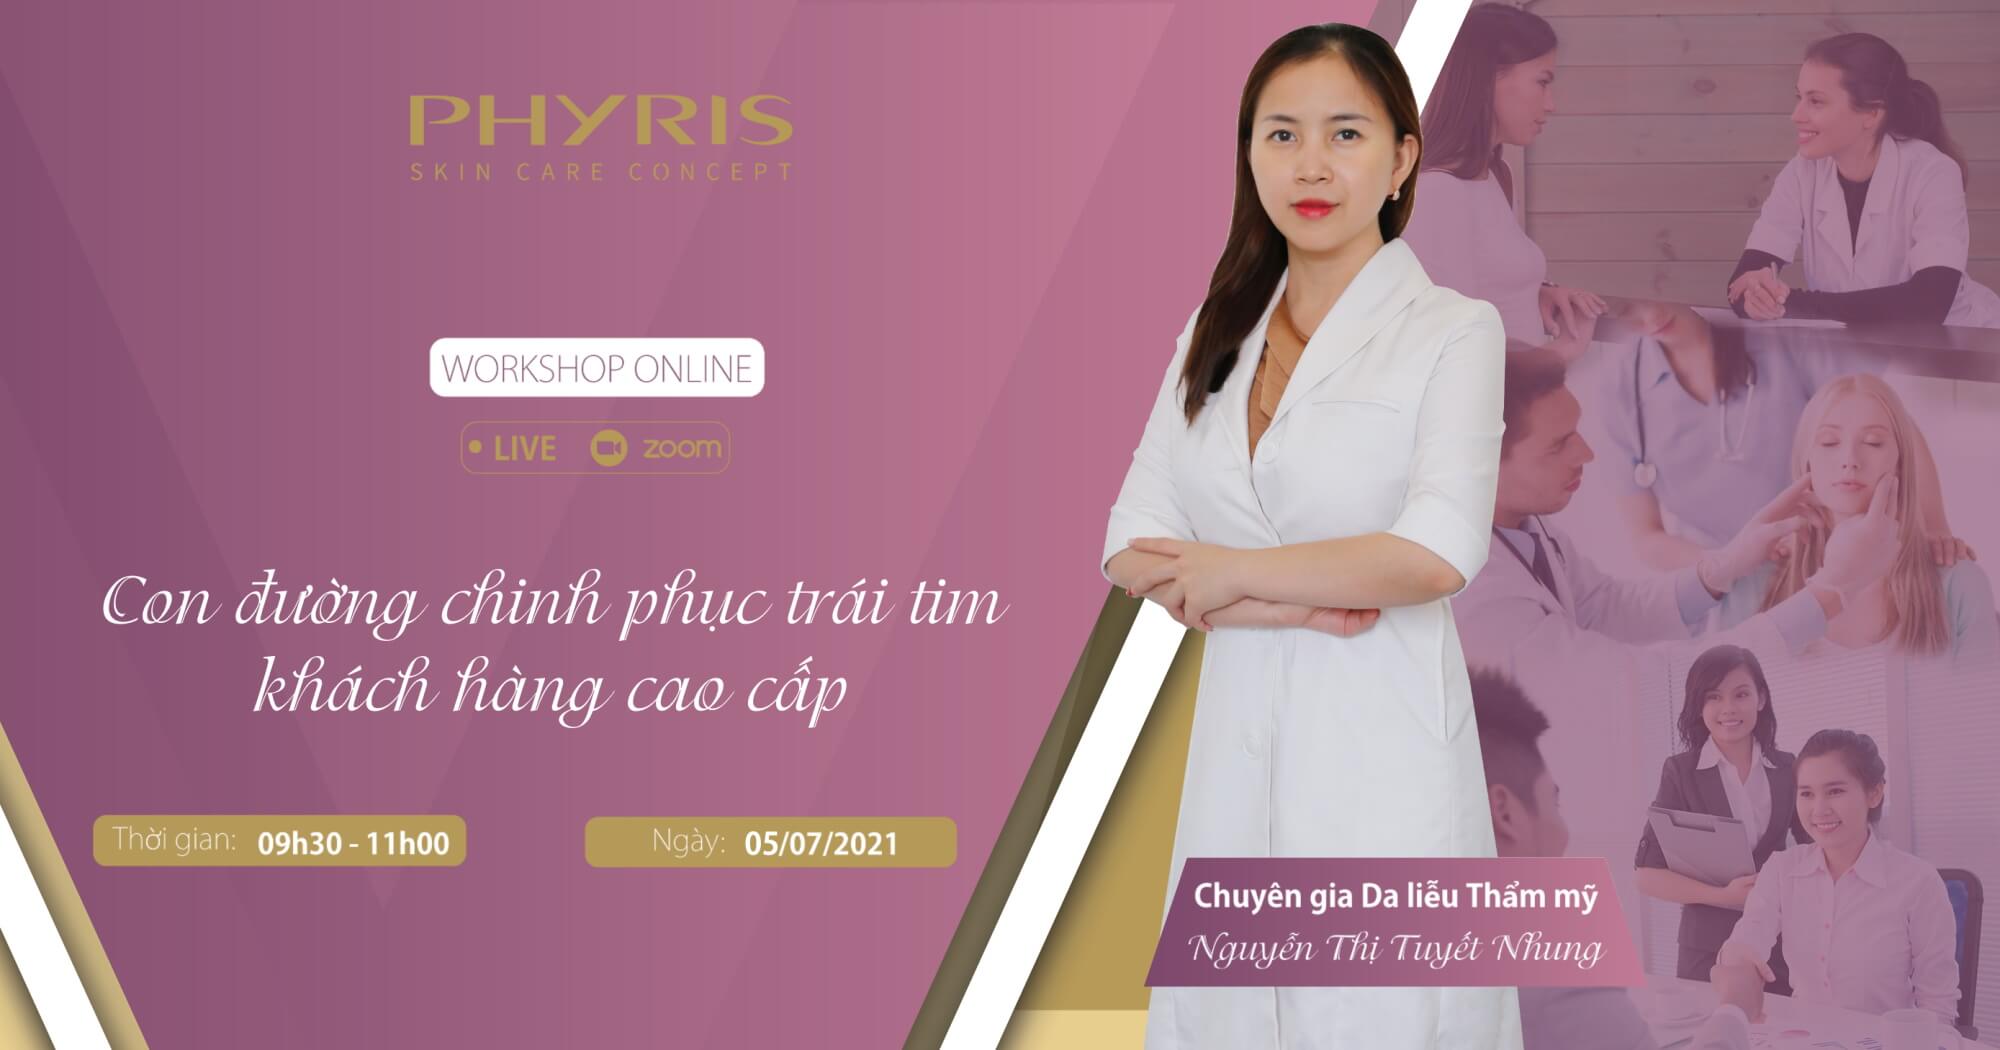 Buổi Workshop Online về Kinh doanh Spa do Chuyên gia Da liễu Thẩm mỹ Nguyễn Thị Tuyết Nhung đào tạo.